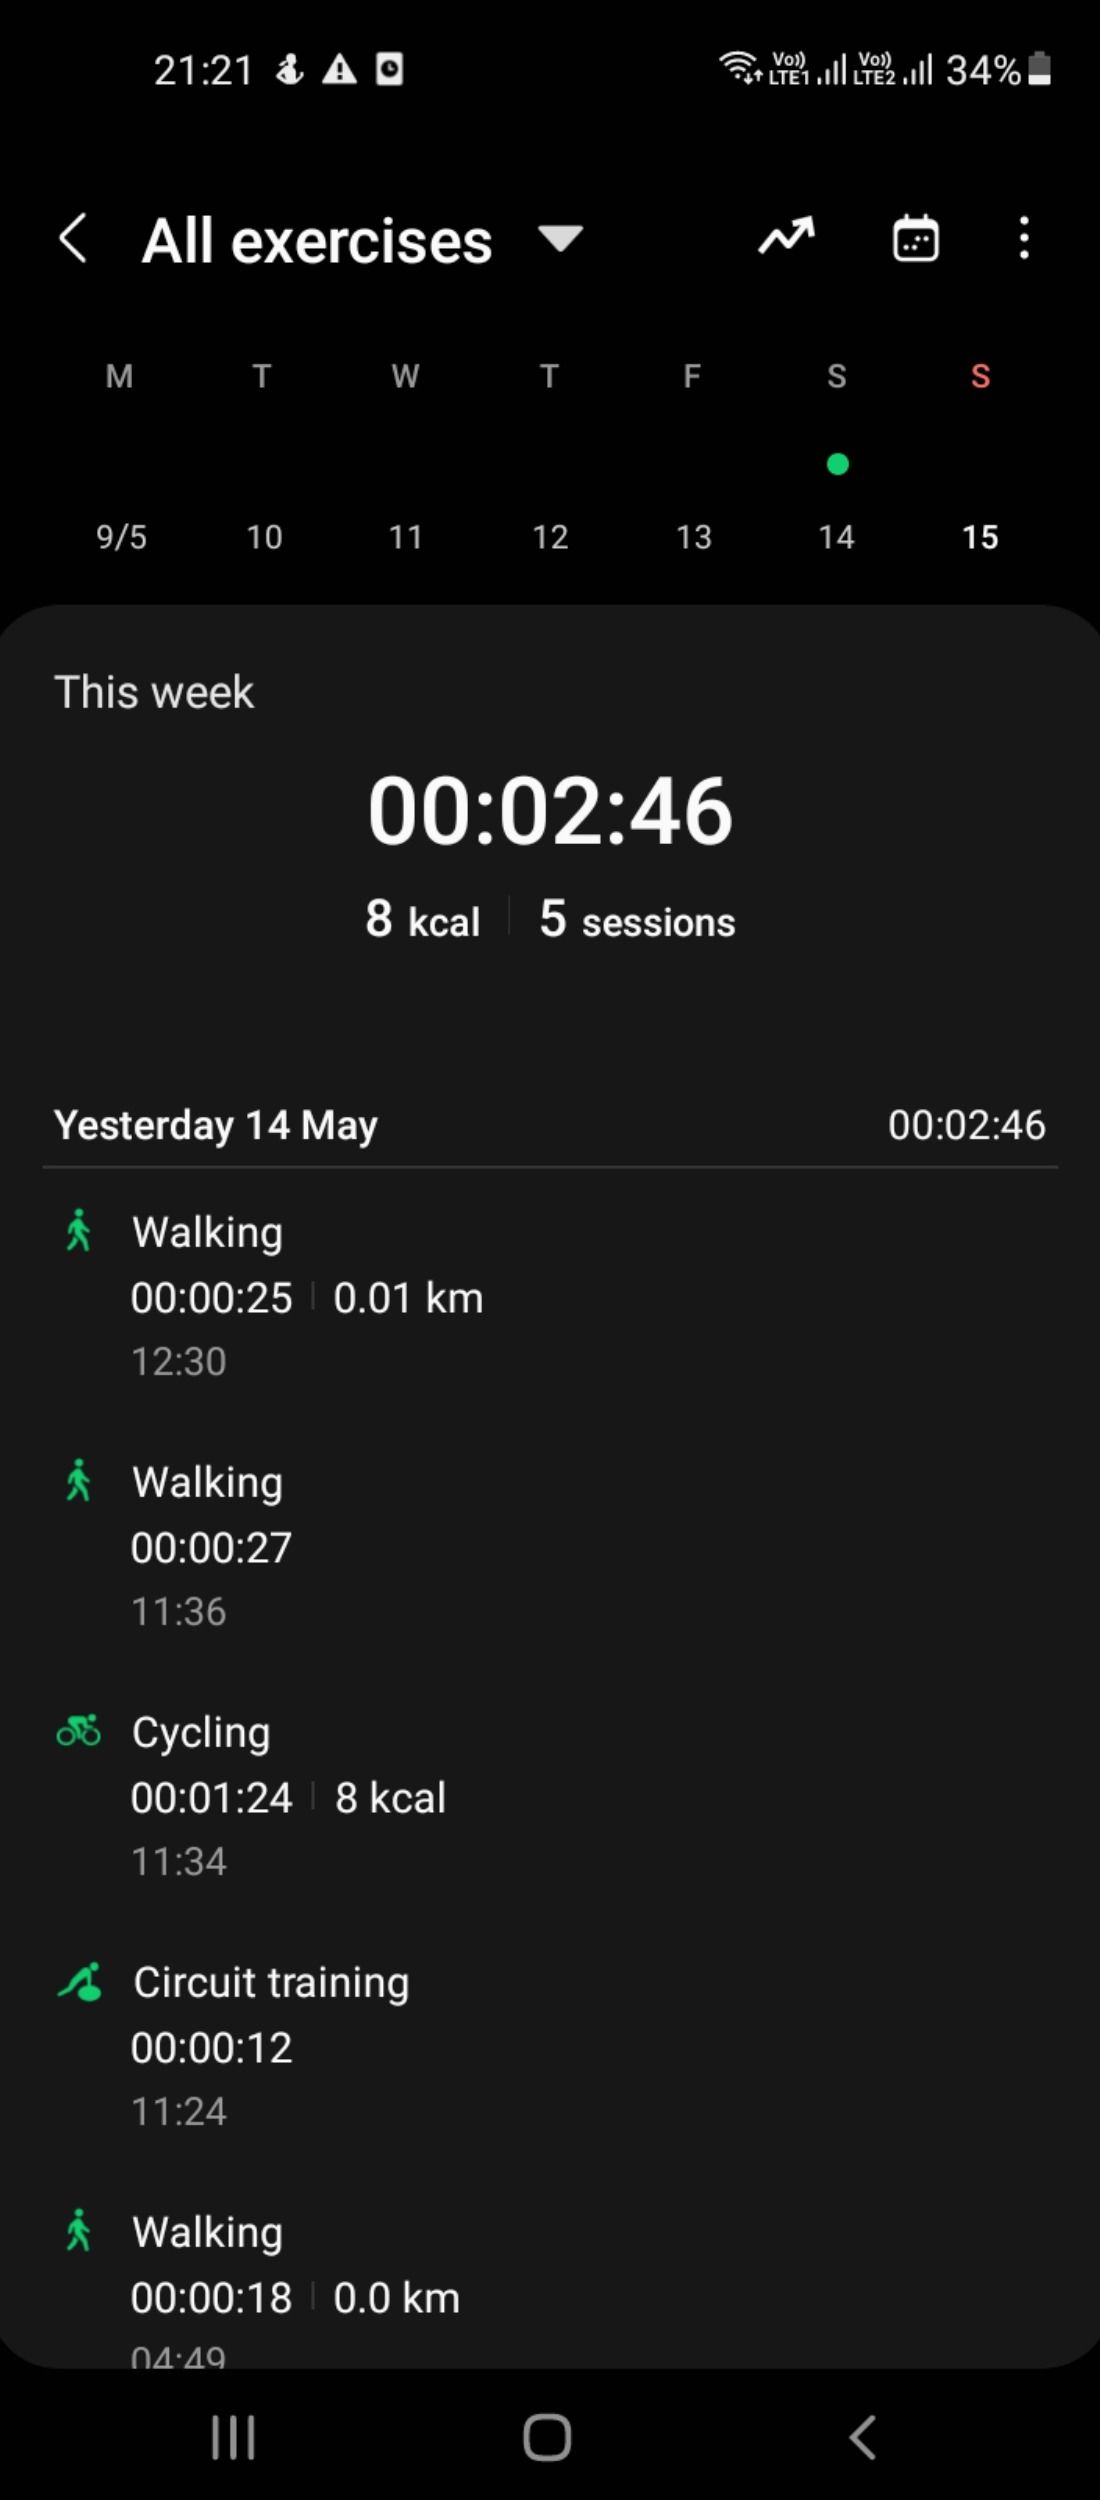 Workout data in Samsung Health app